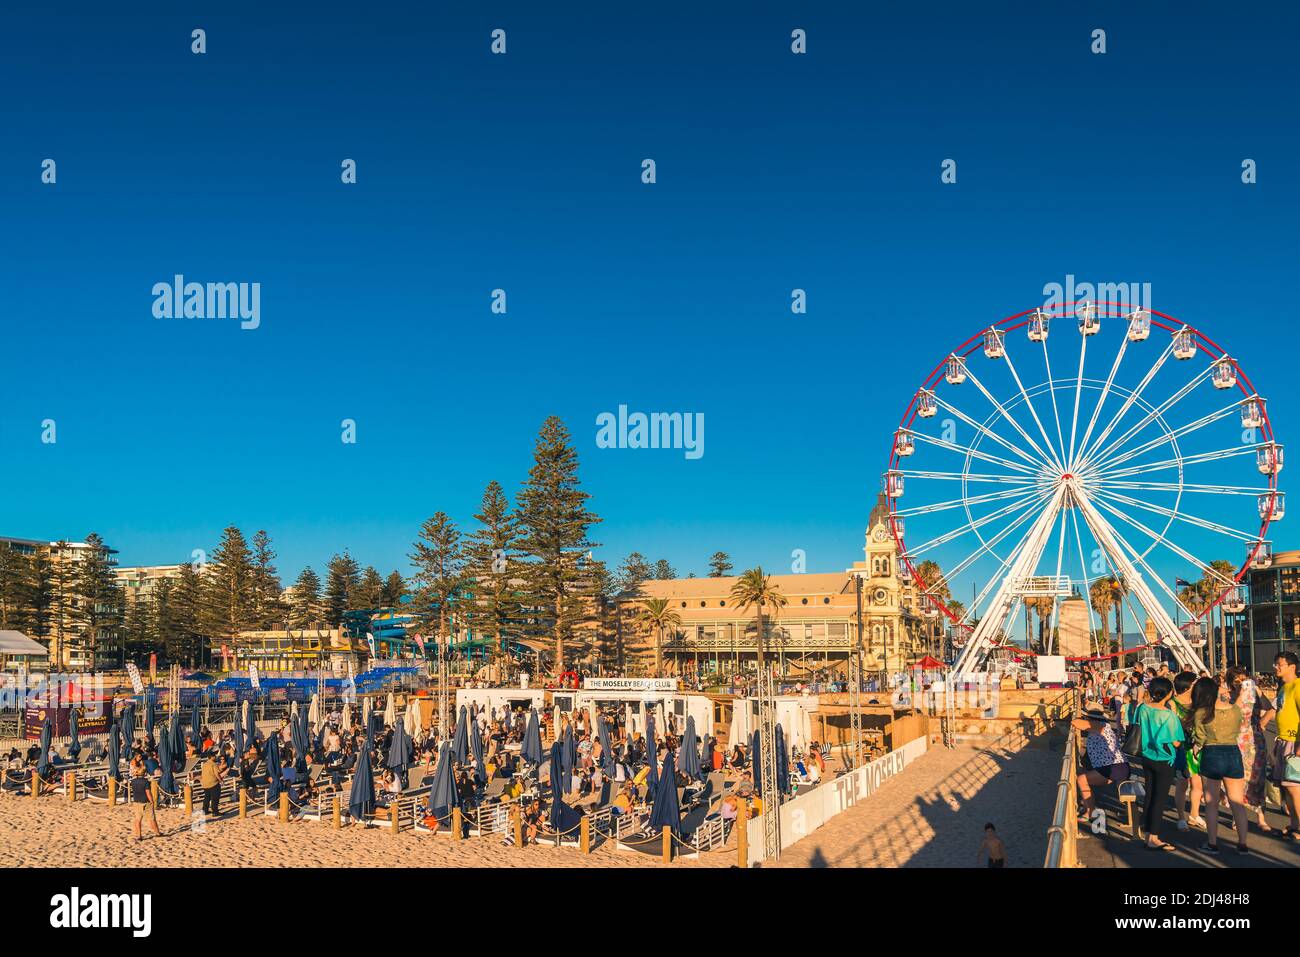 Adelaida, Australia Meridional - 12 de enero de 2019: La gente del bar Moseley Beach Club disfruta de las vistas de la puesta de sol en una noche de verano Foto de stock